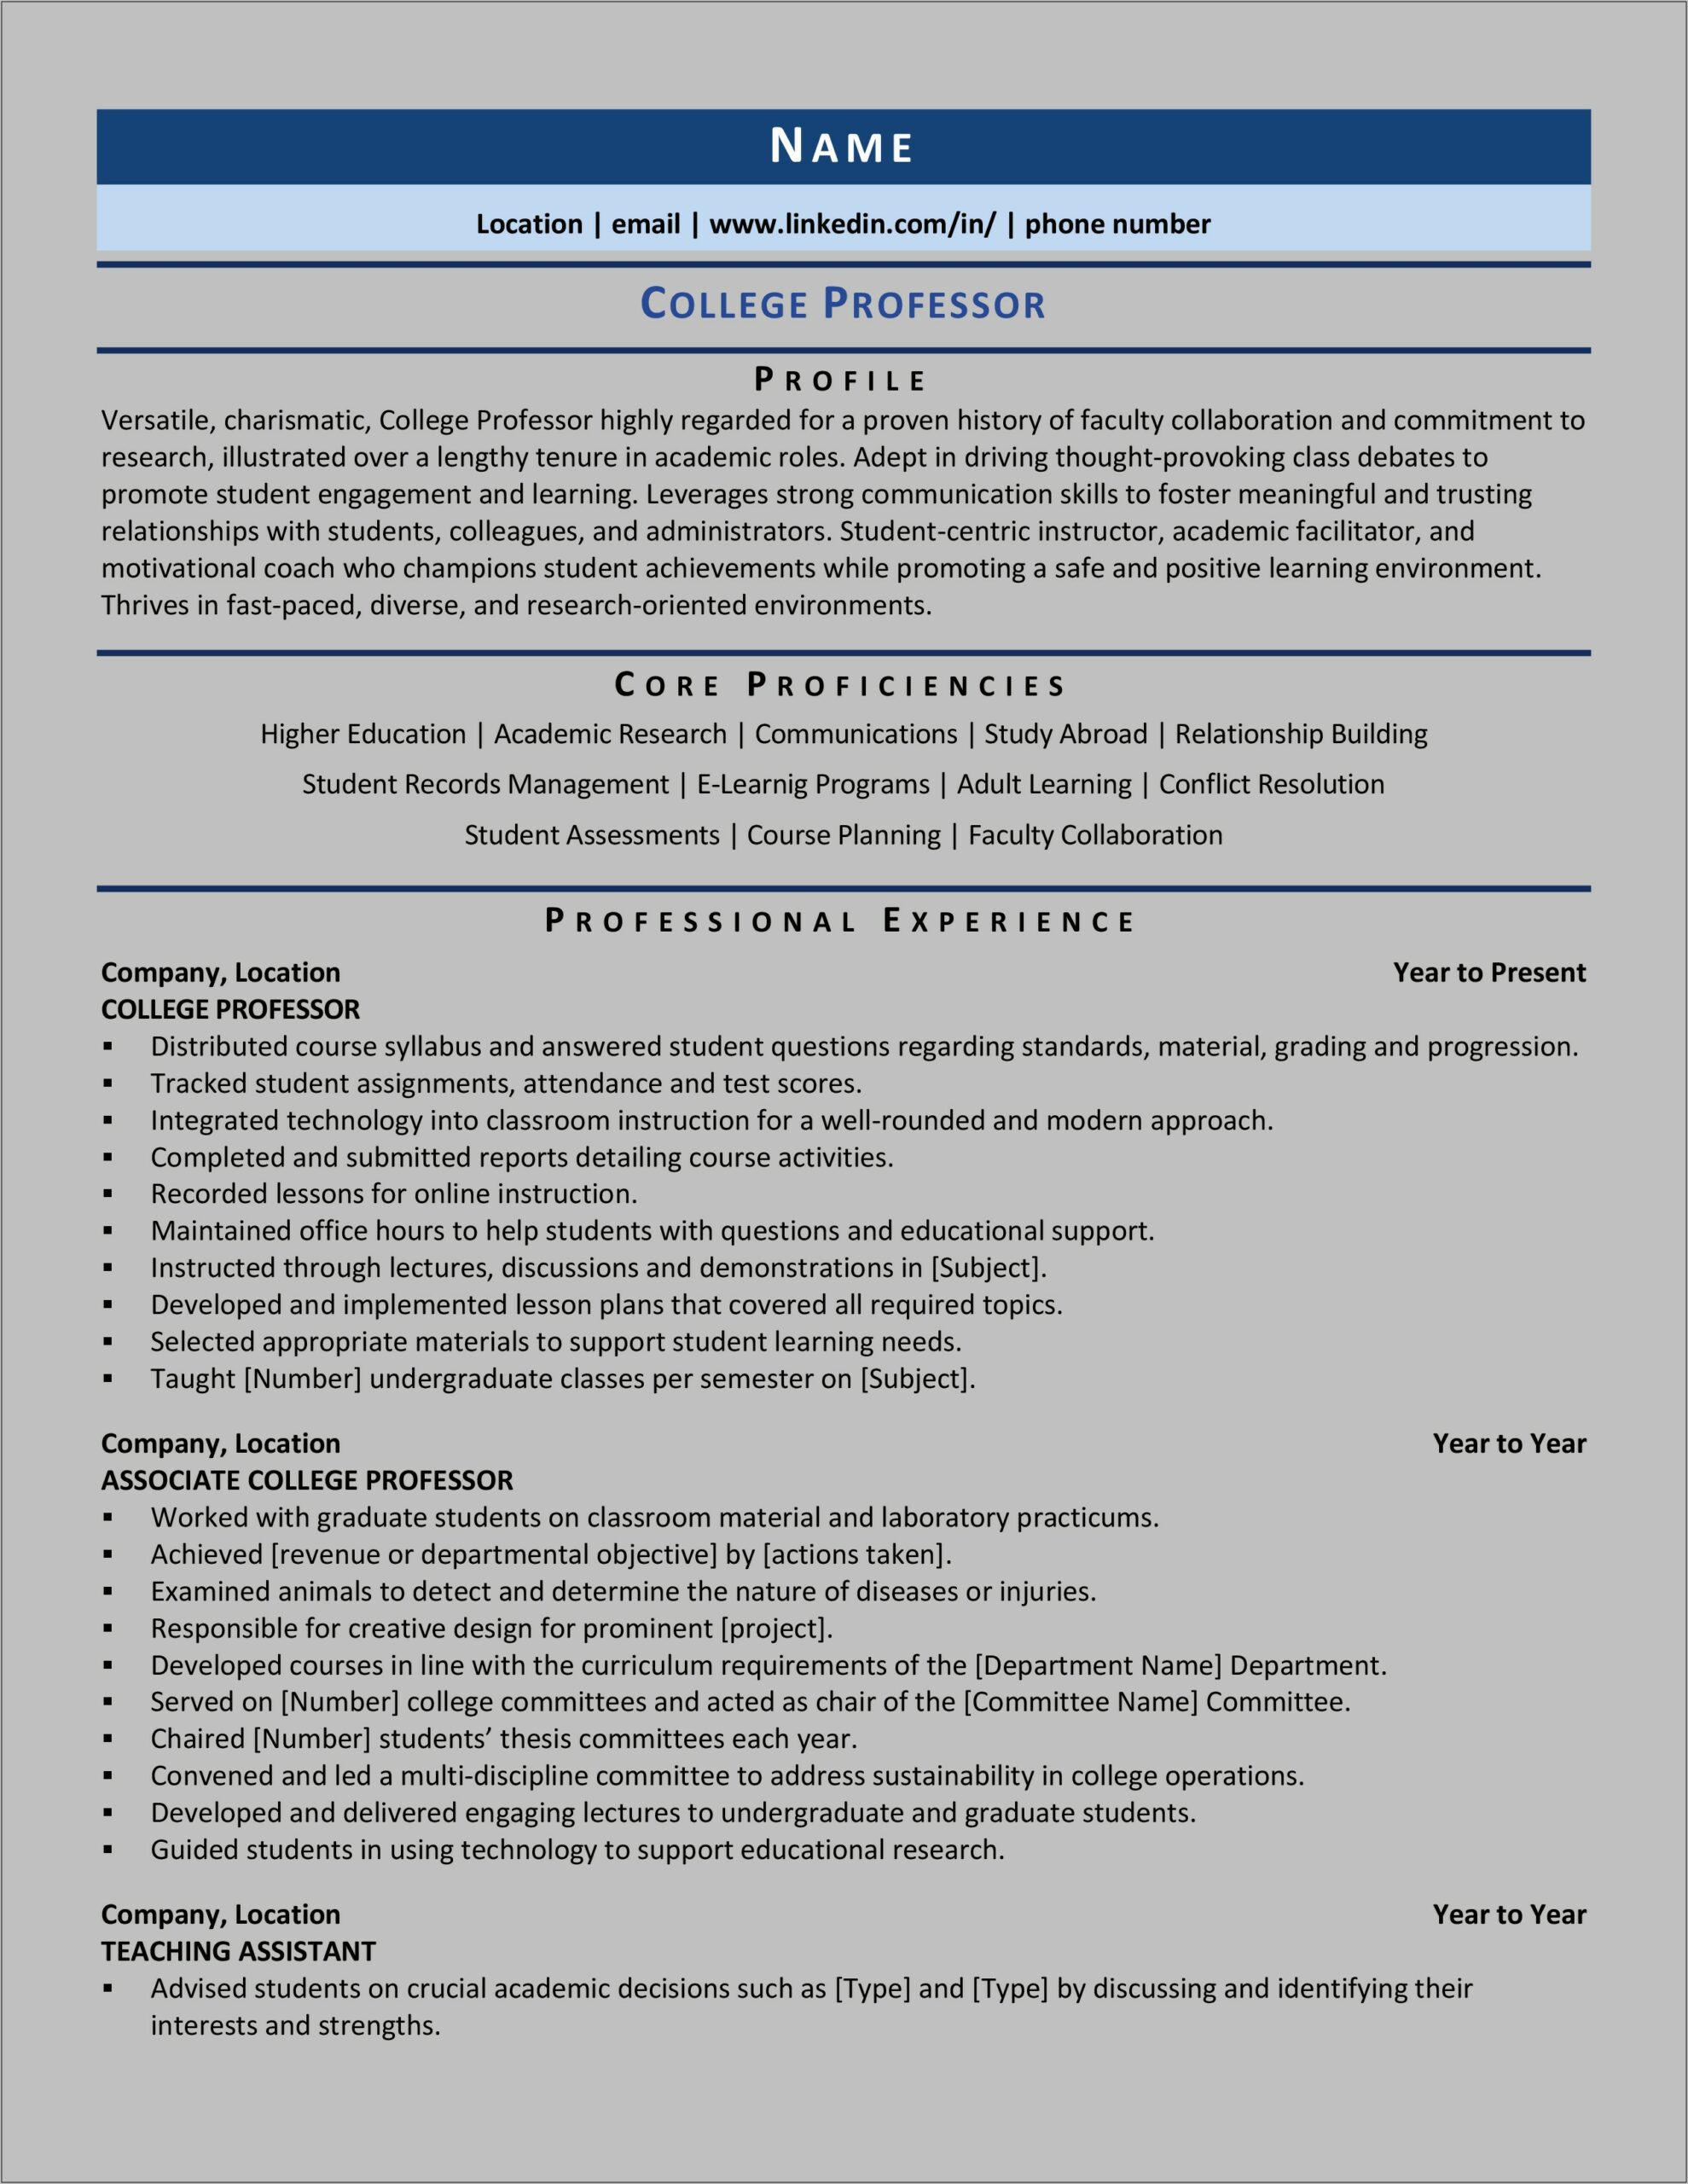 College Teaching Assistant Job Description Resume